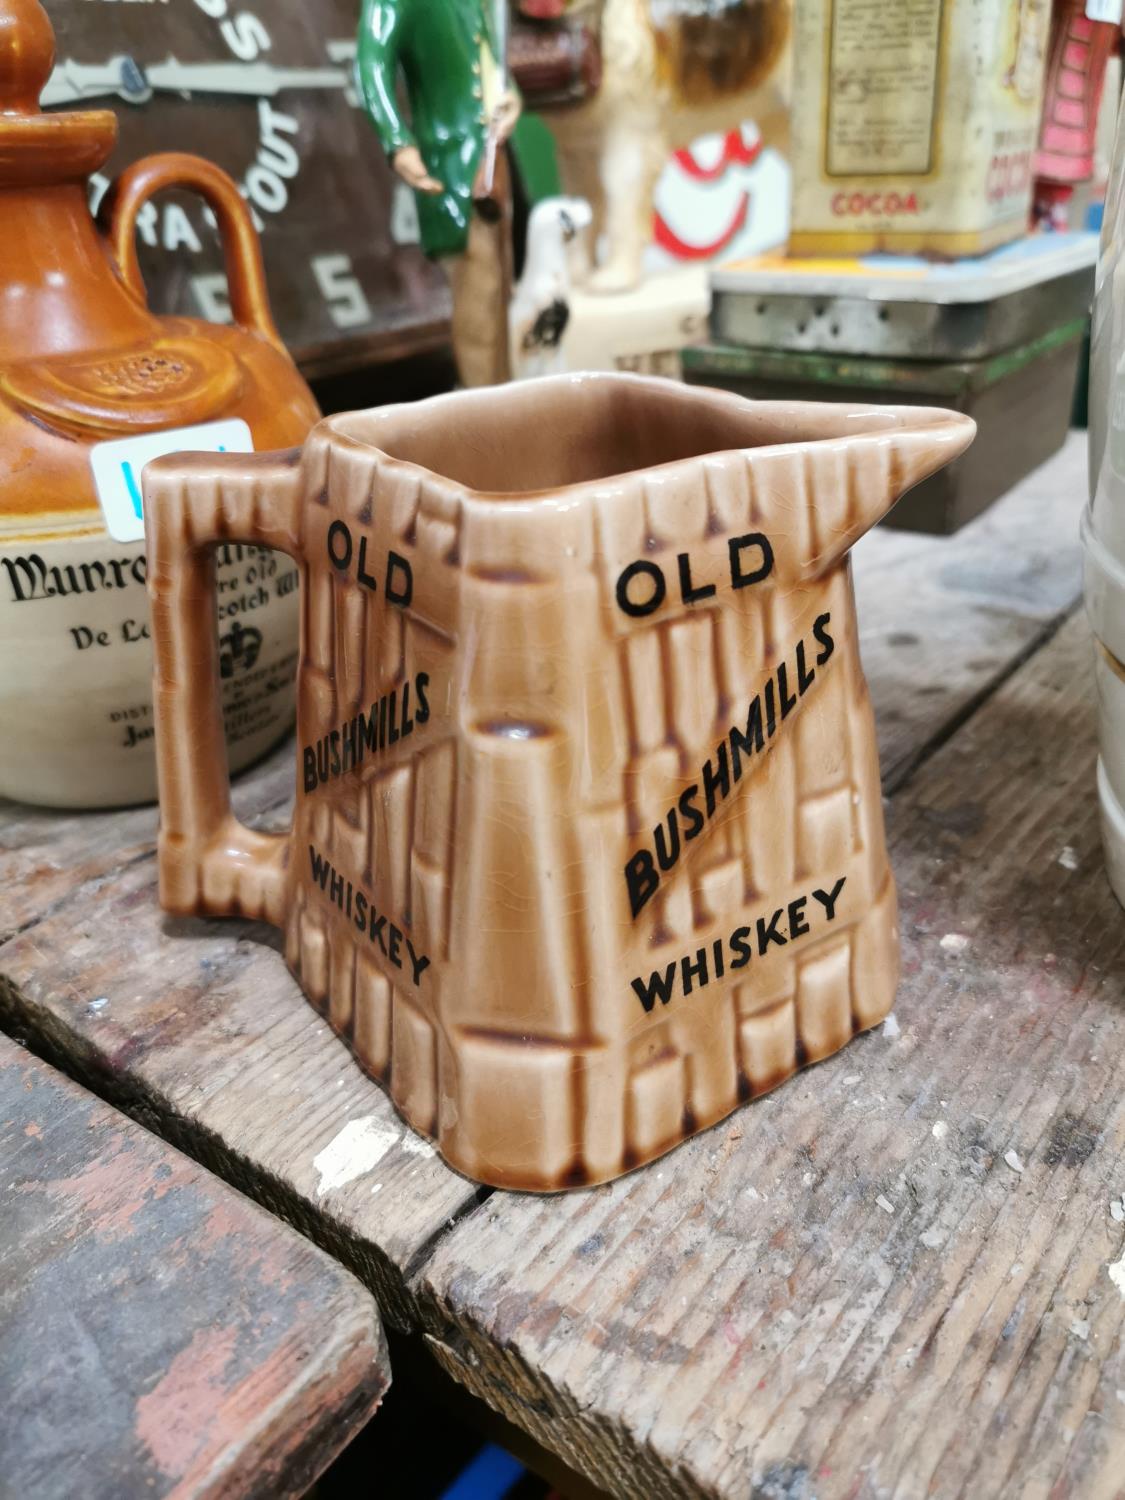 Old Bushmills Irish Whiskey advertising jug.